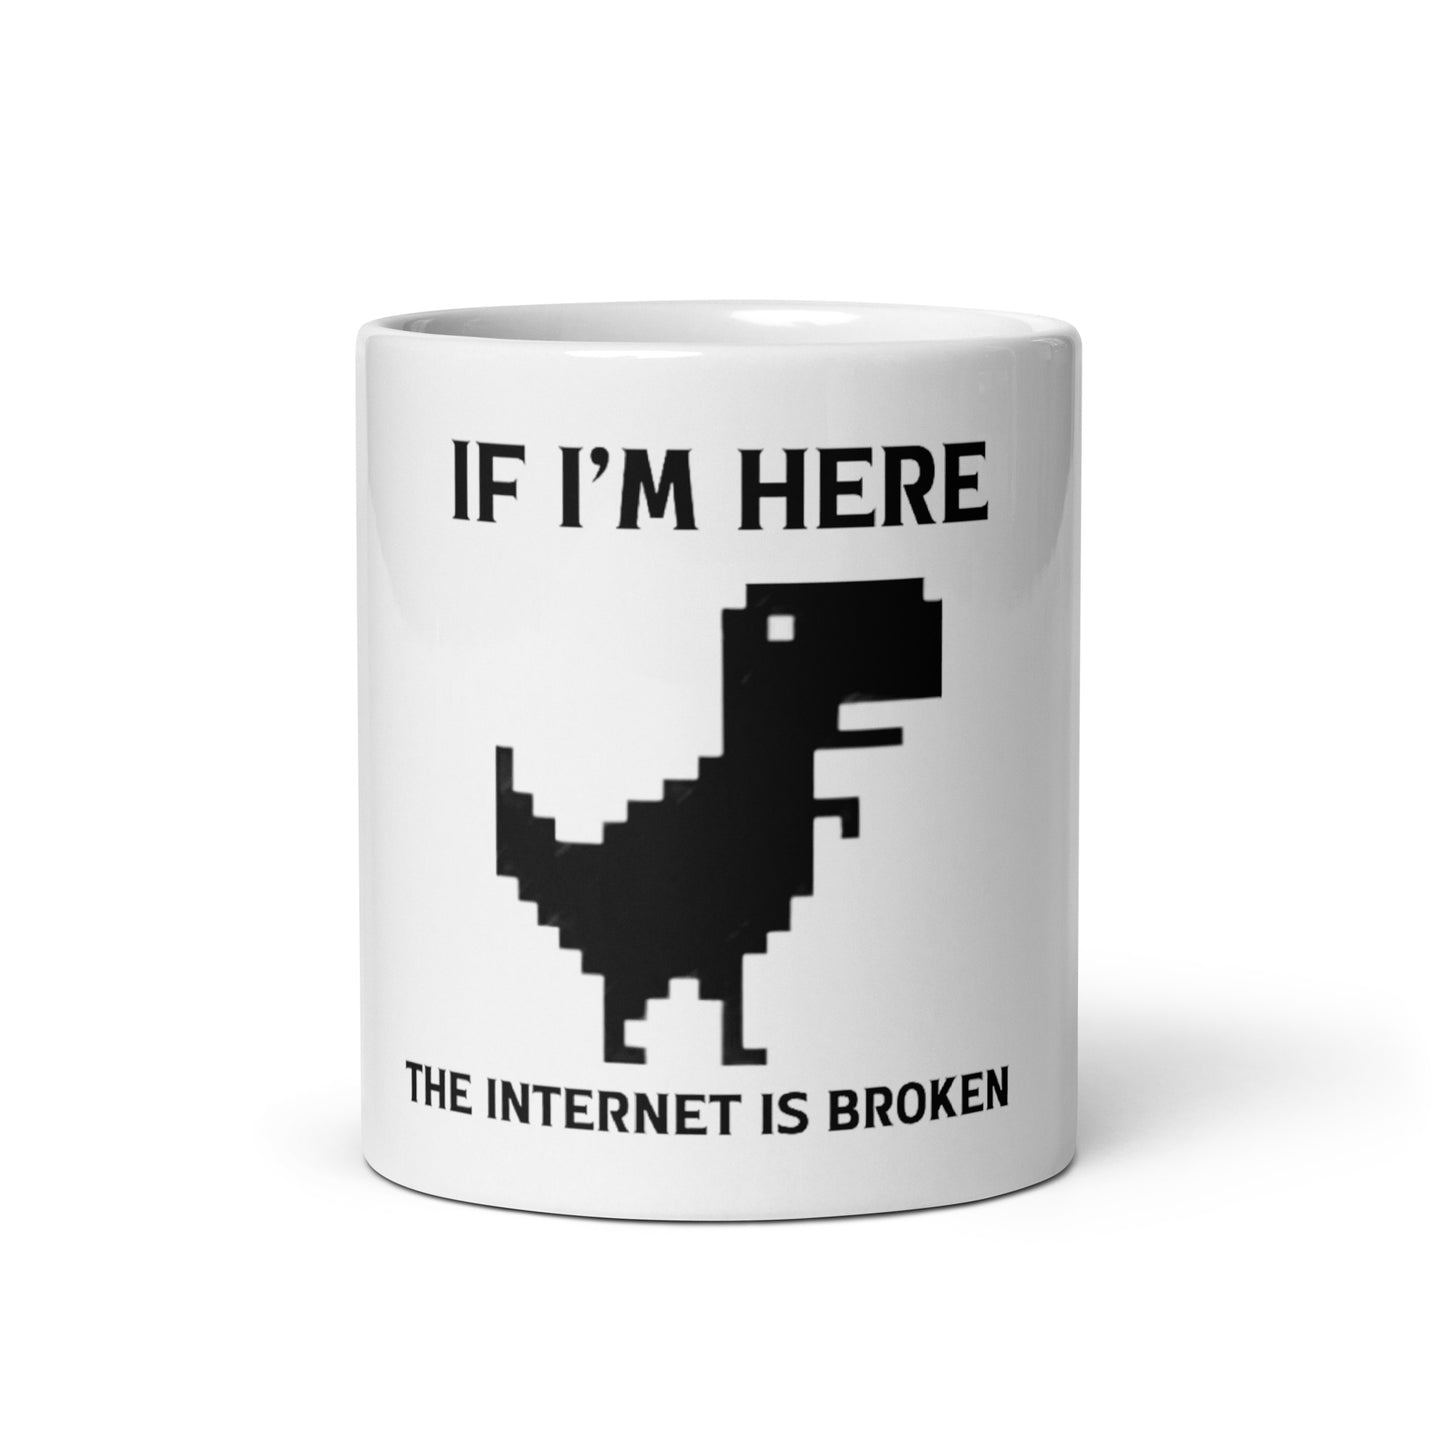 Broken Internet mug